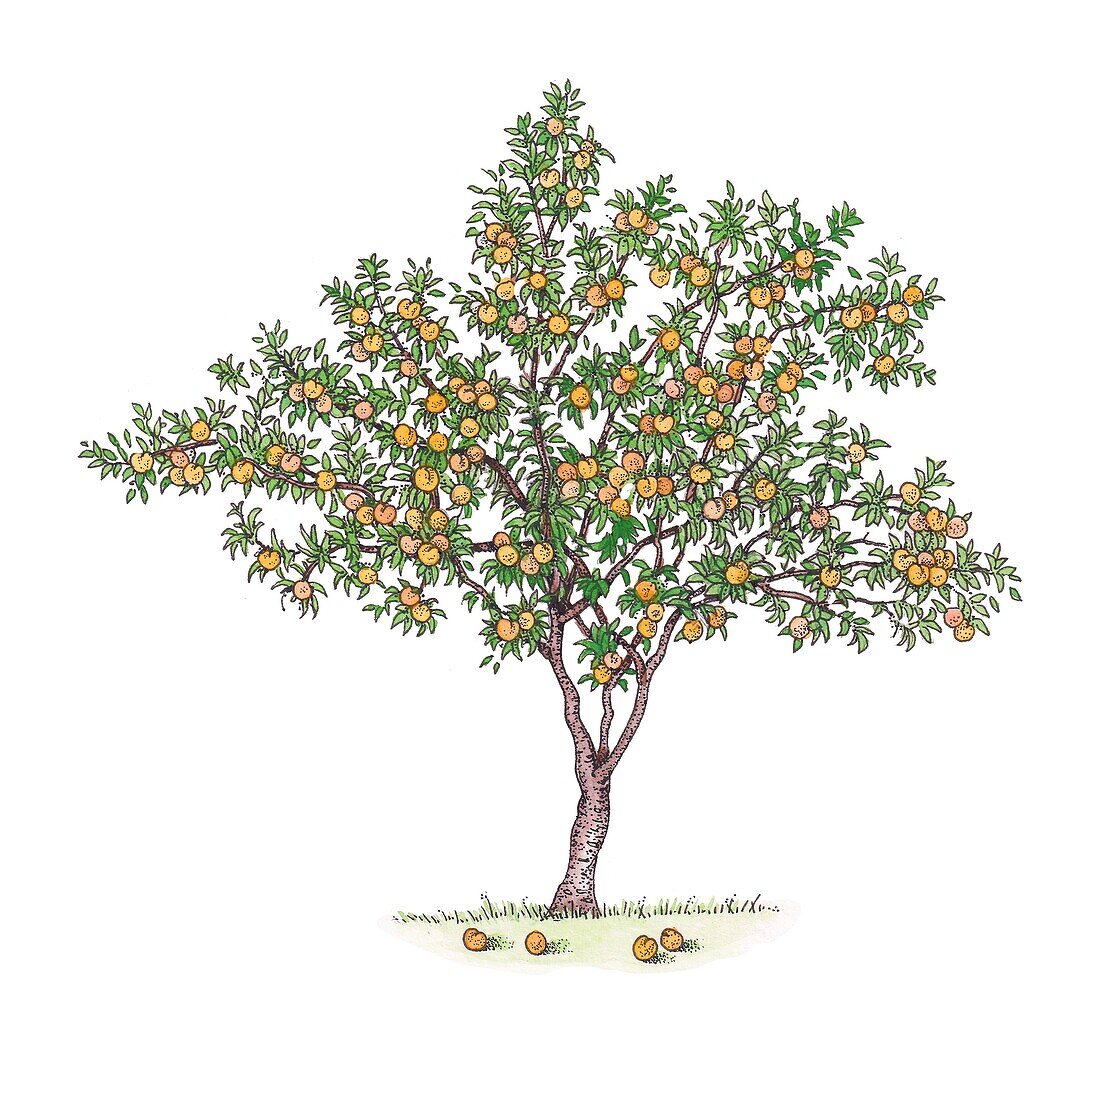 Peach (Prunus persica) tree in fruit, illustration